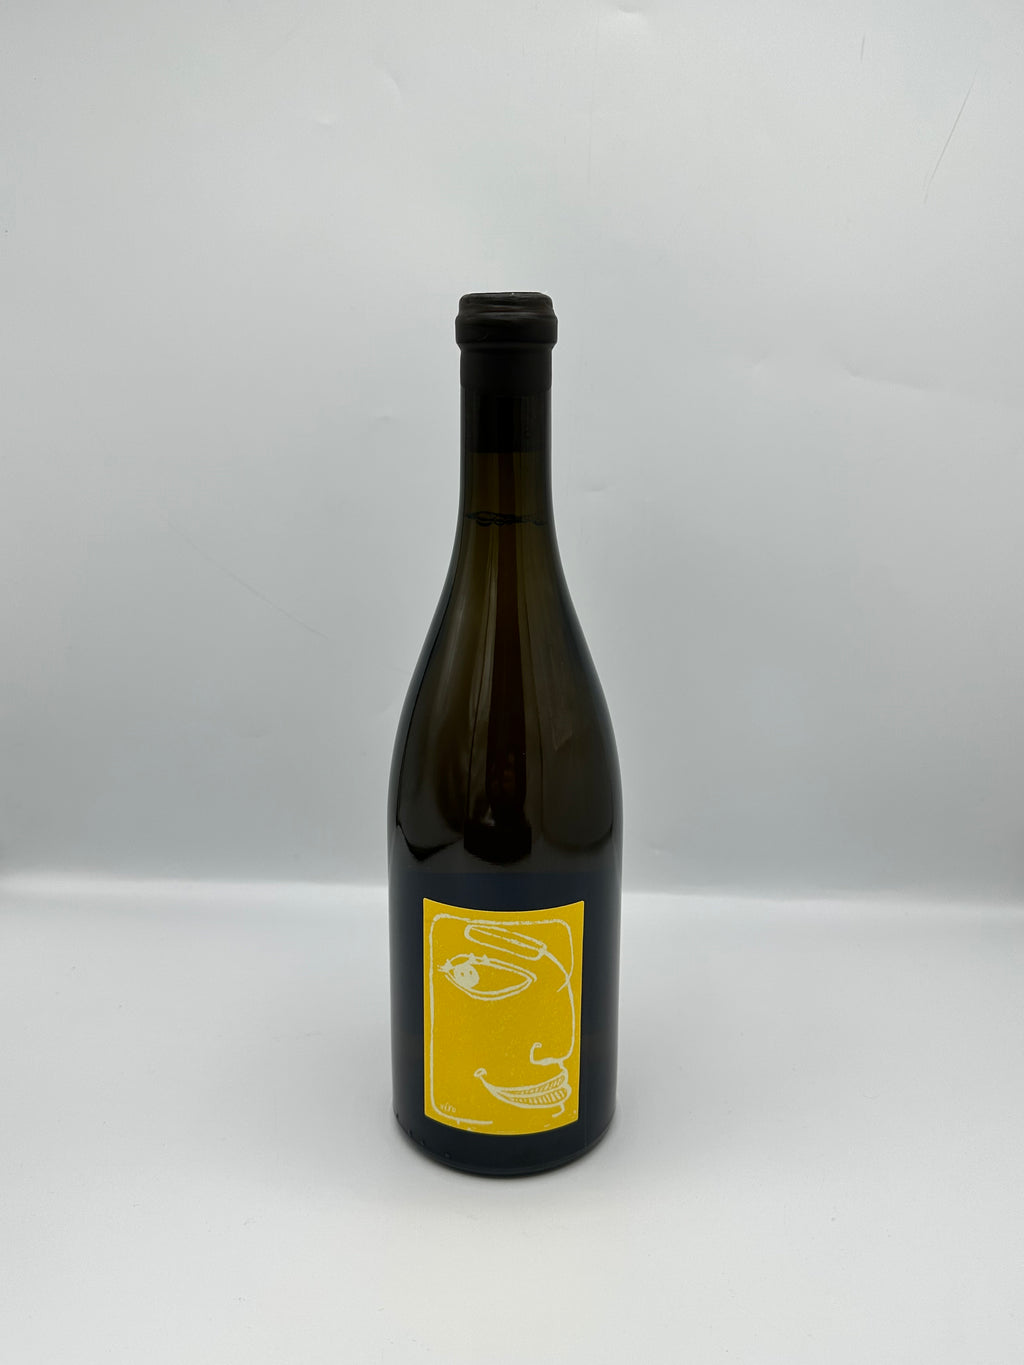 Stroebel, Coteaux Champenois White Chardonnay 2018